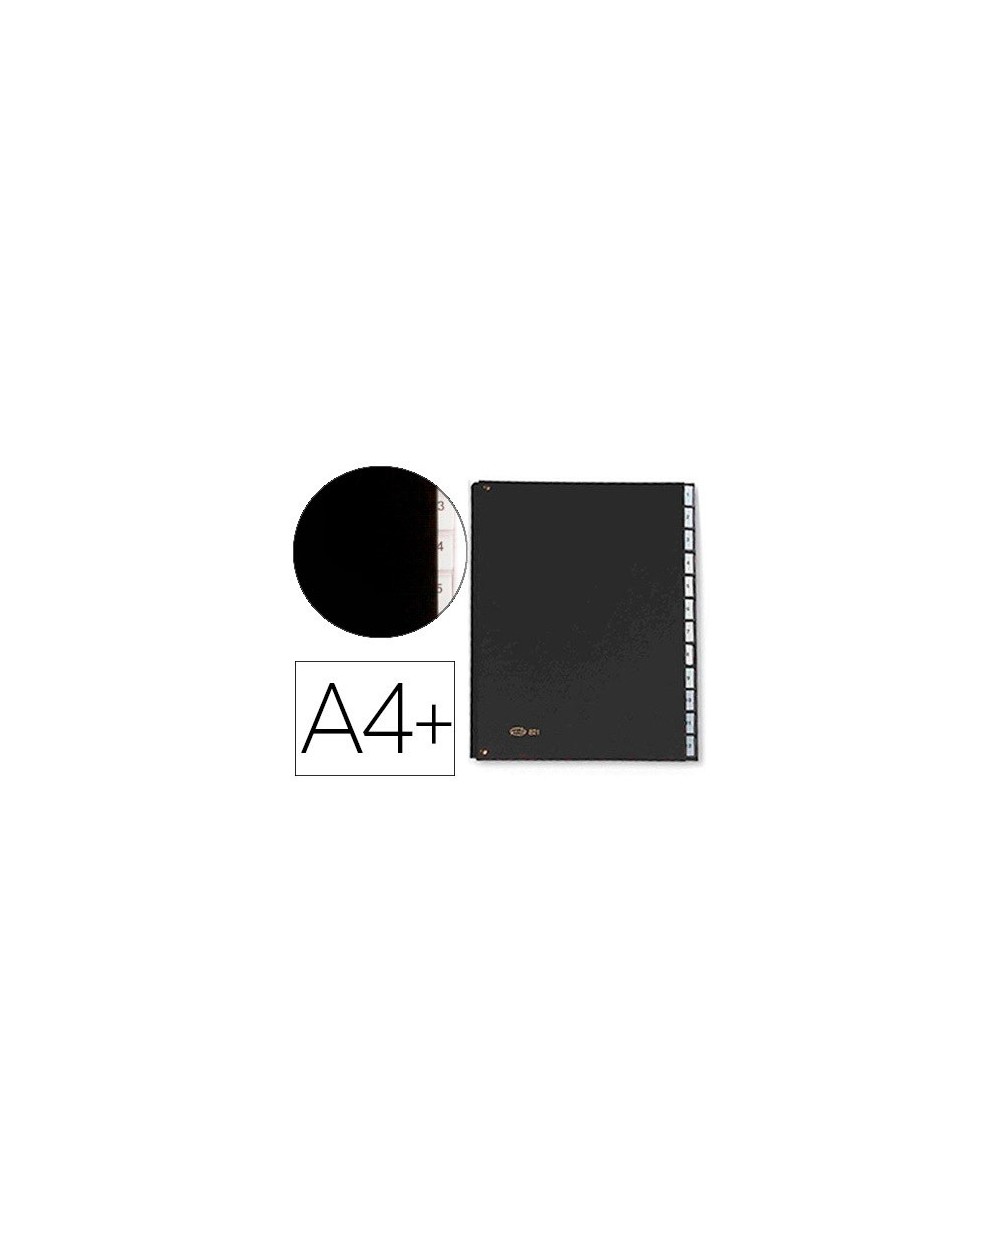 Carpeta clasificadora fuelle pardo carton compacto folio 12 departamentos visor doble personalizables color negro